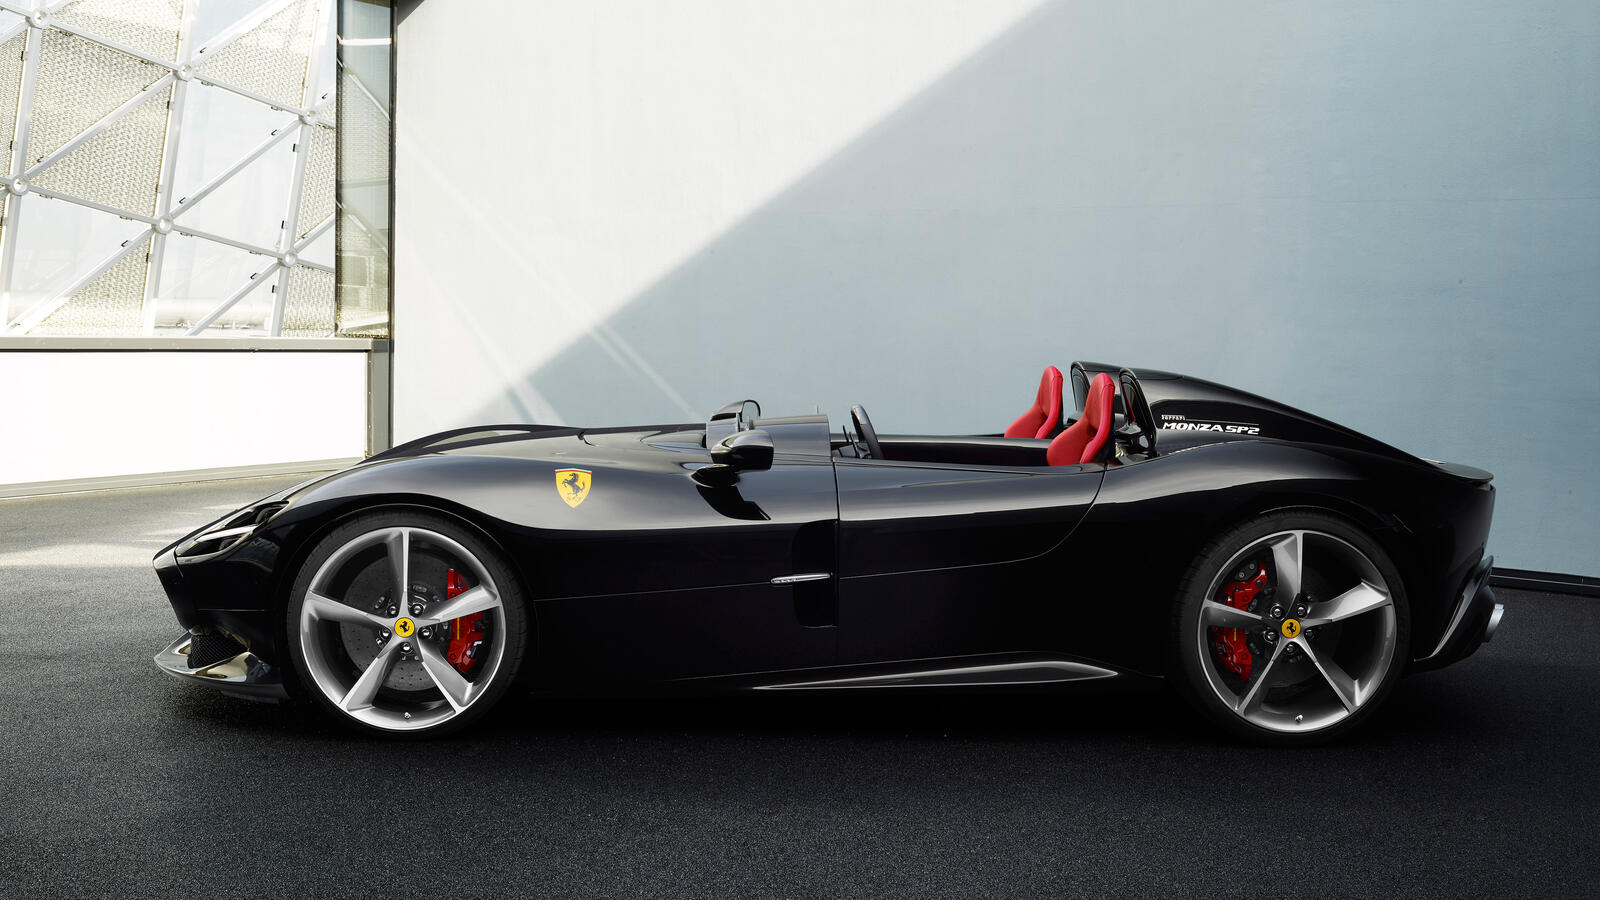 Бесплатное фото Ferrari Monza Sp2 черного цвета